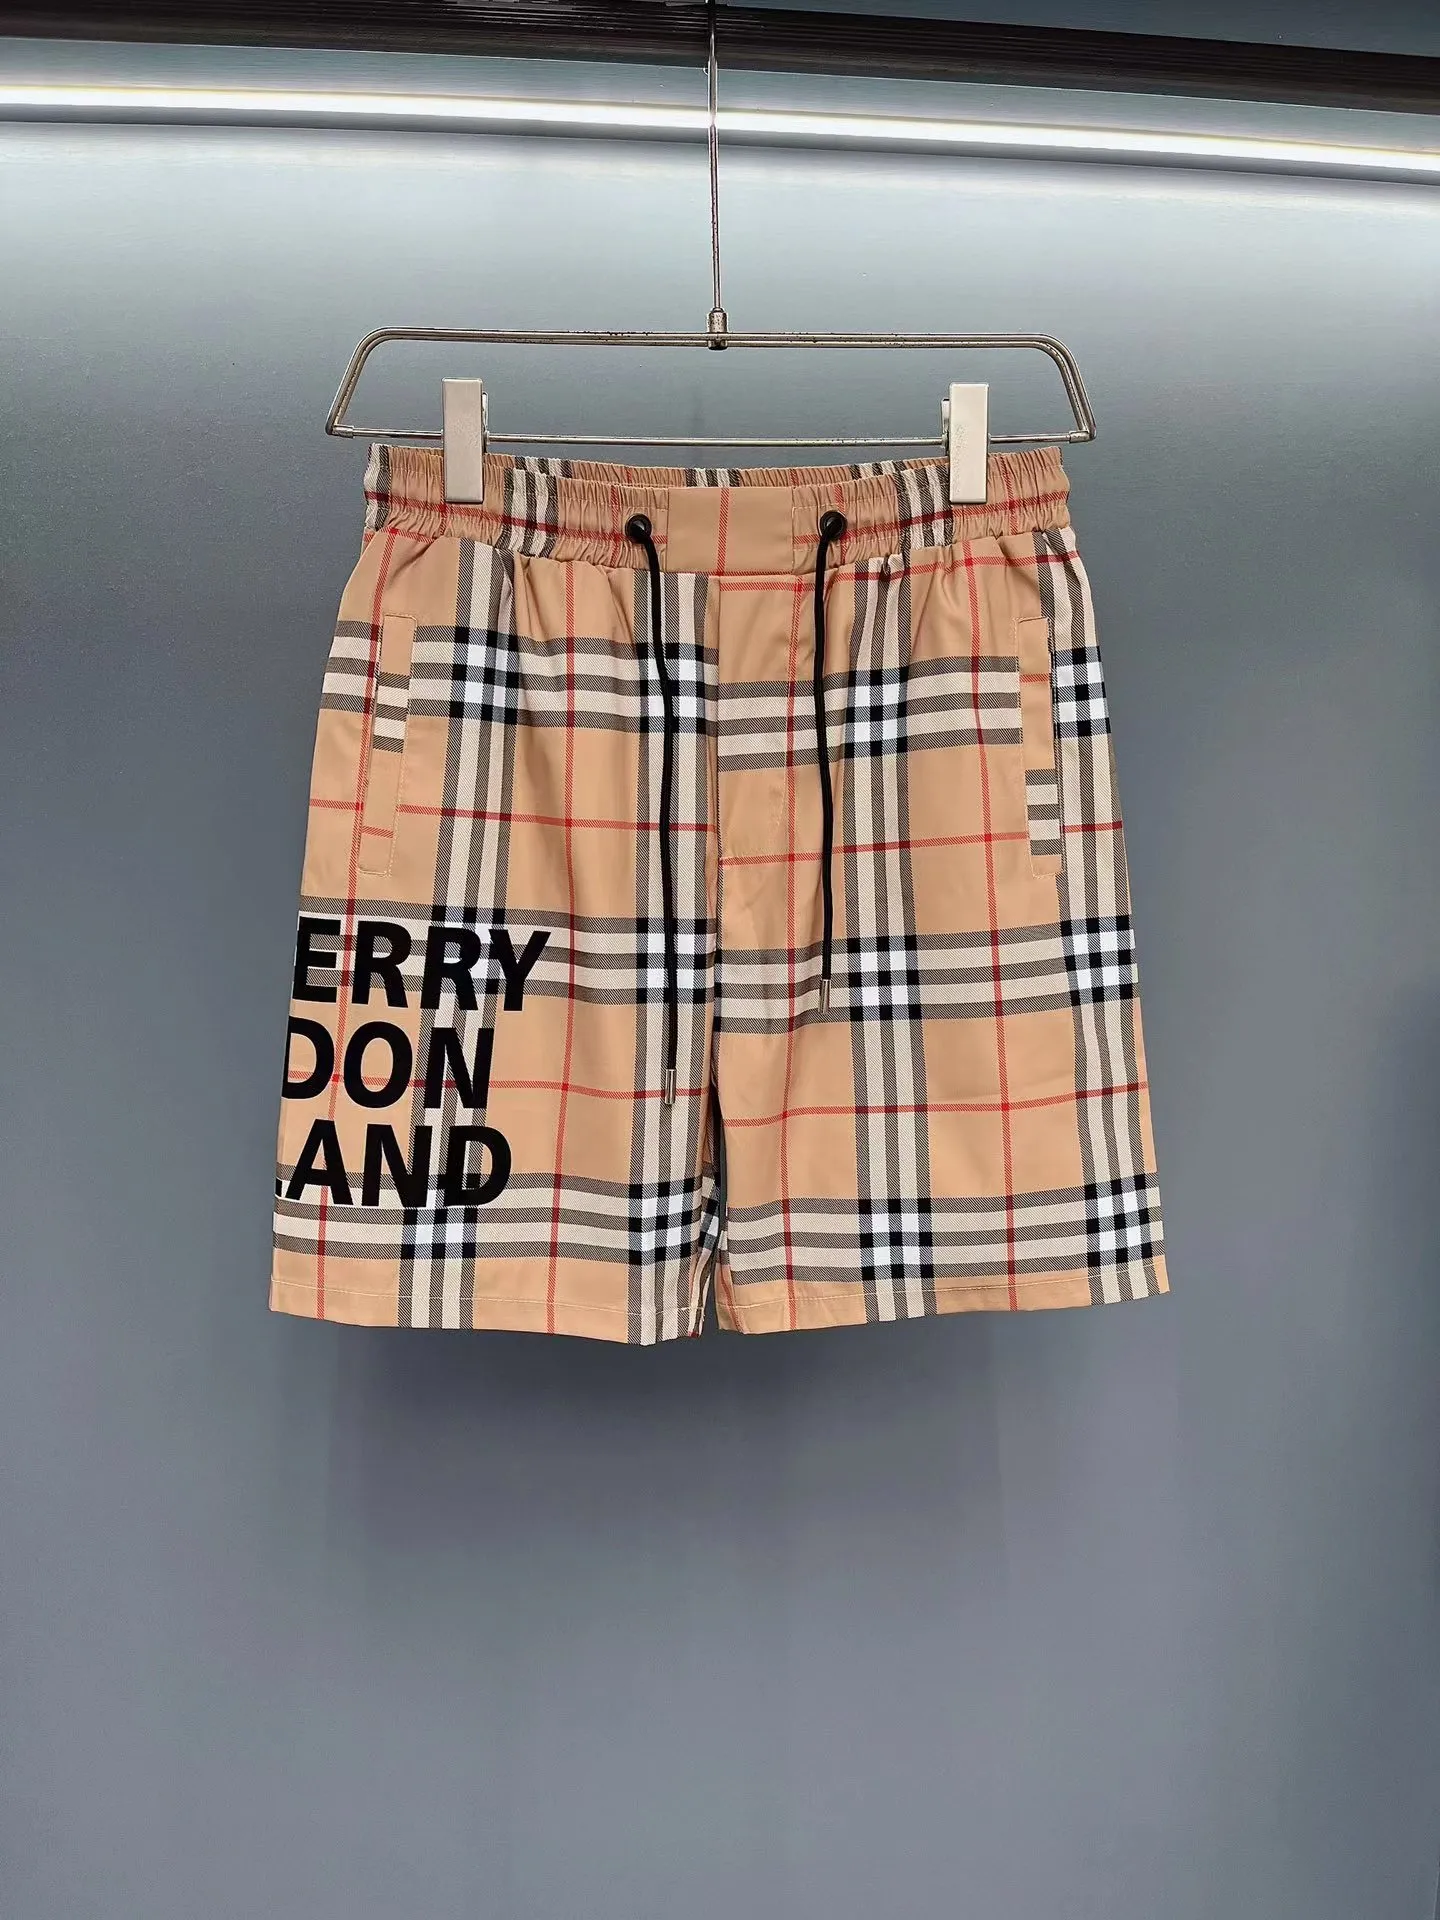 Bur Designer Swim Trunks Shorts Shorts Trunks Gym Krótkie krótkie spodenki dla mężczyzn Szybkie suszenie w paski szachownicza graficzna graficzna swobodna pant granica harajuku streetwear 9189